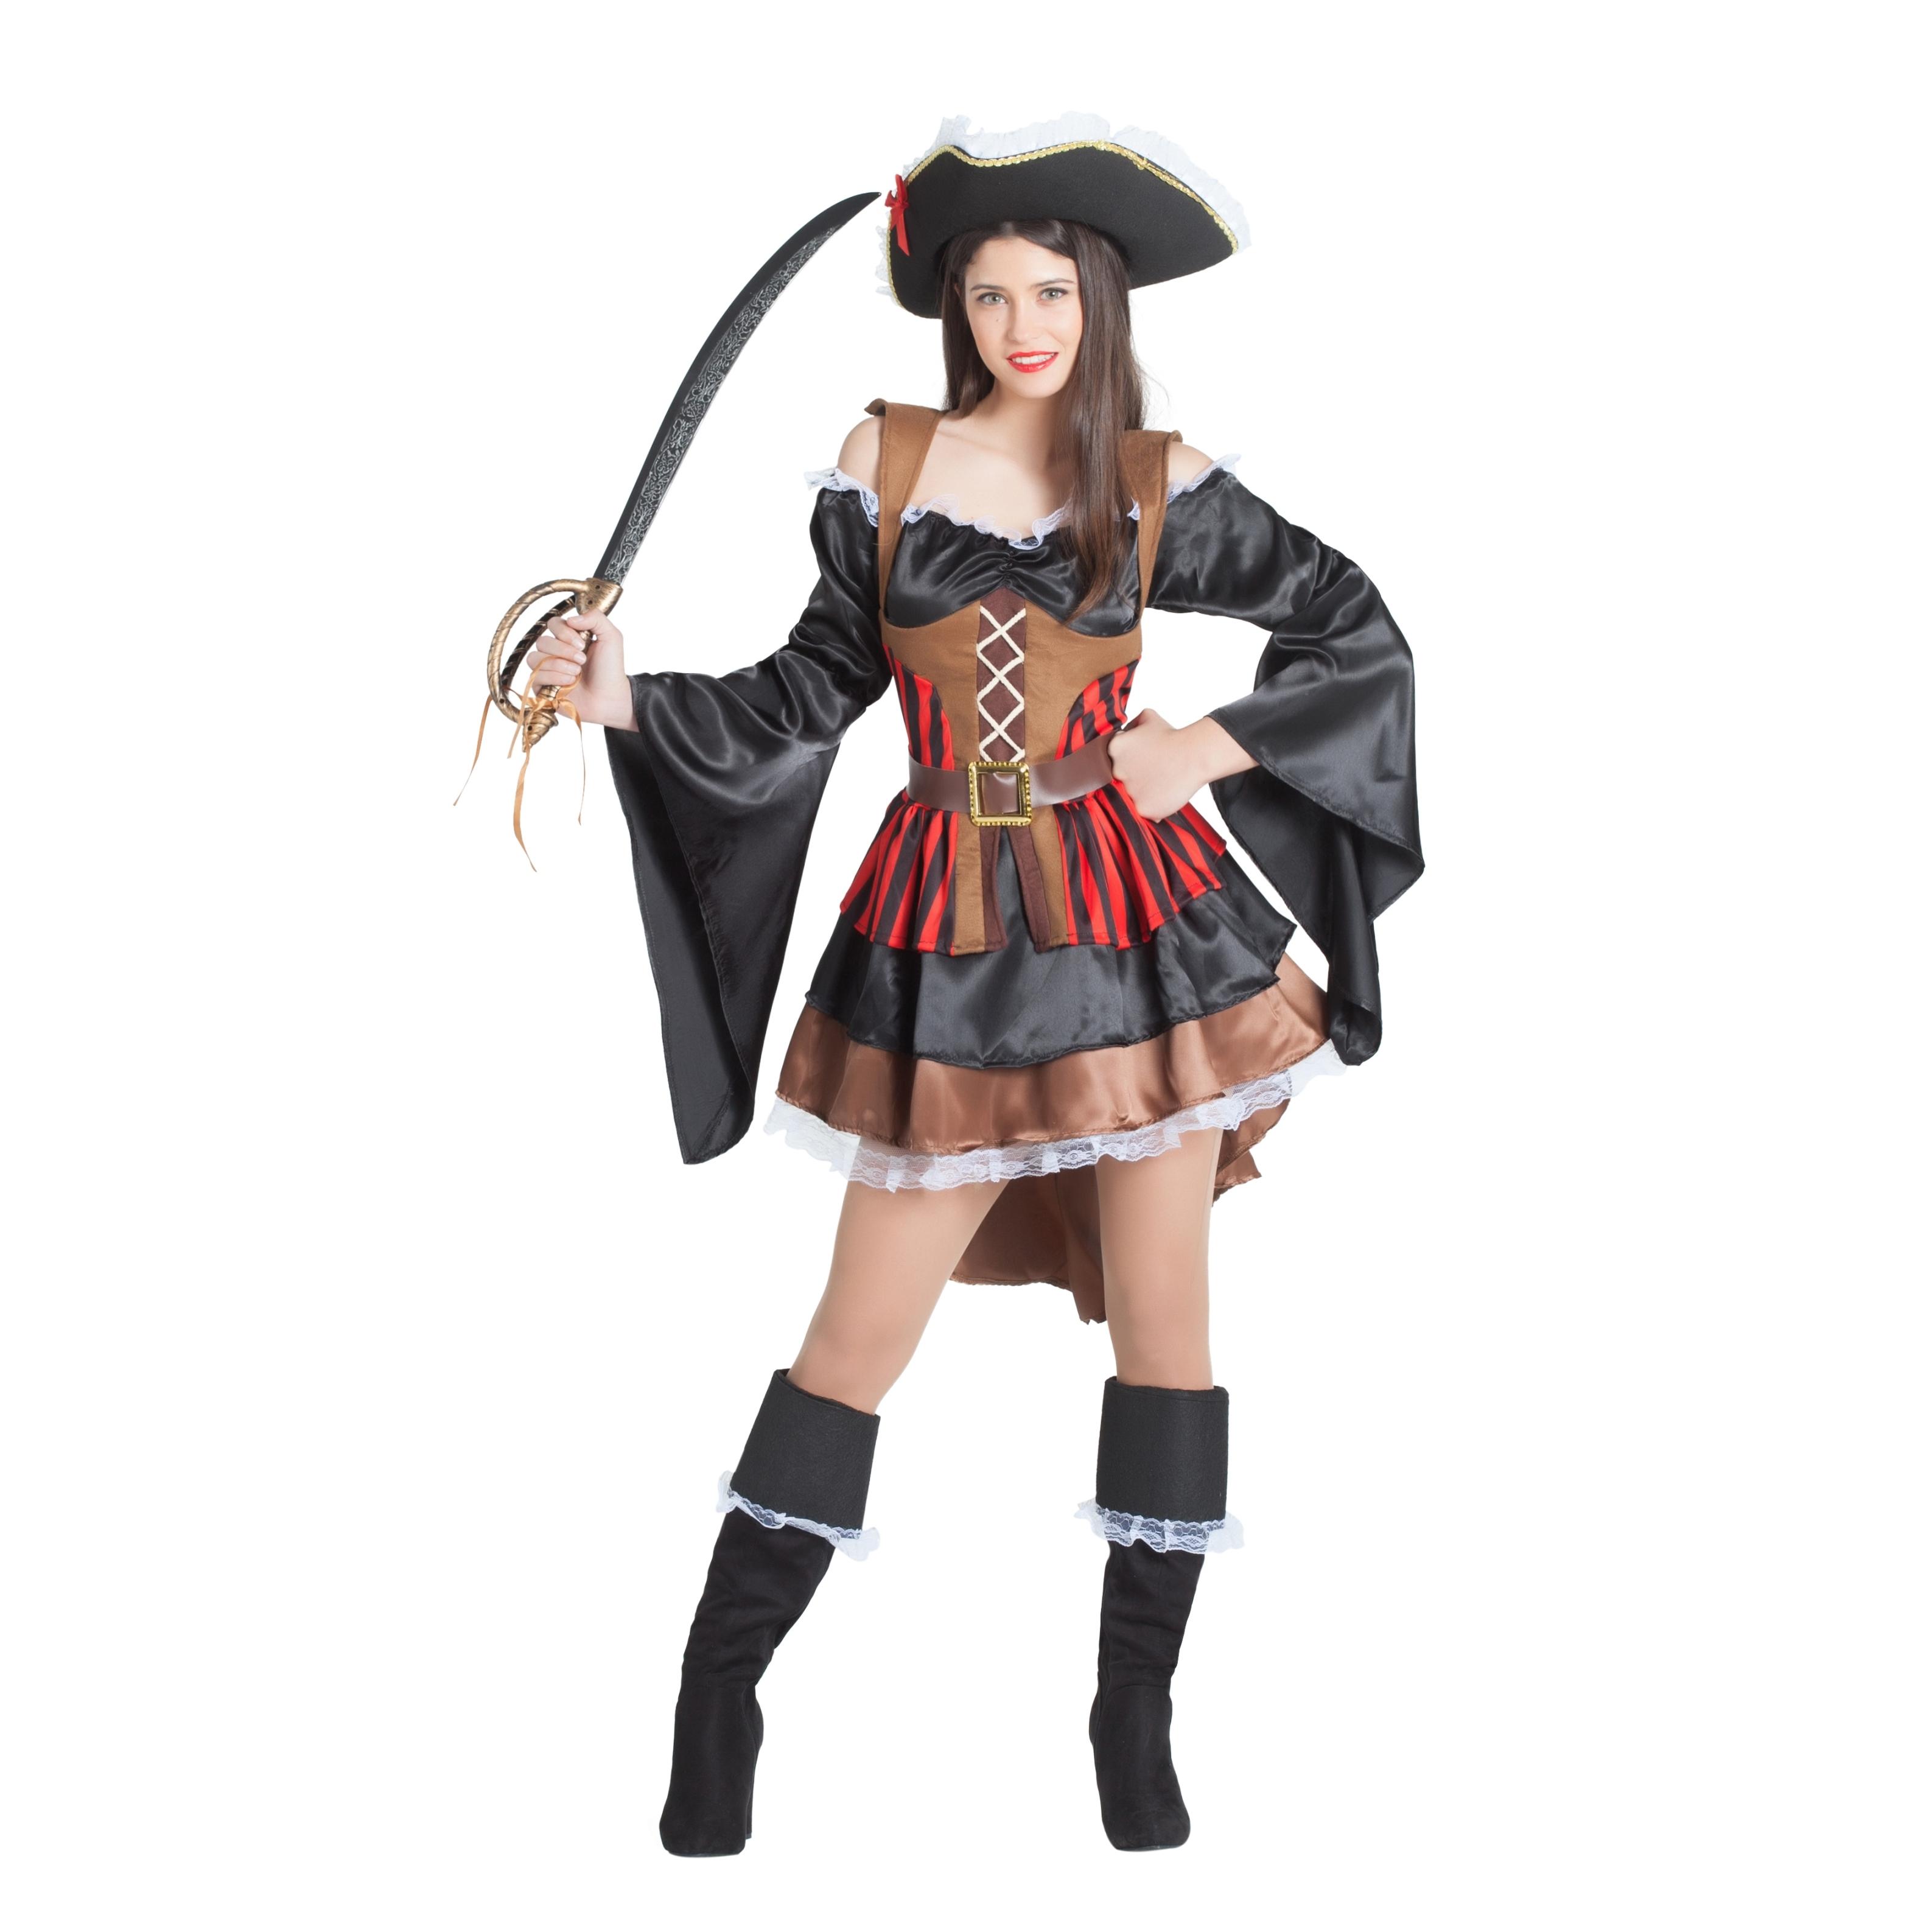 https://www.casangel.com/axos/imagenes/by06305-disfraz-pirata-falda-y-volantes-mujer-1.jpg